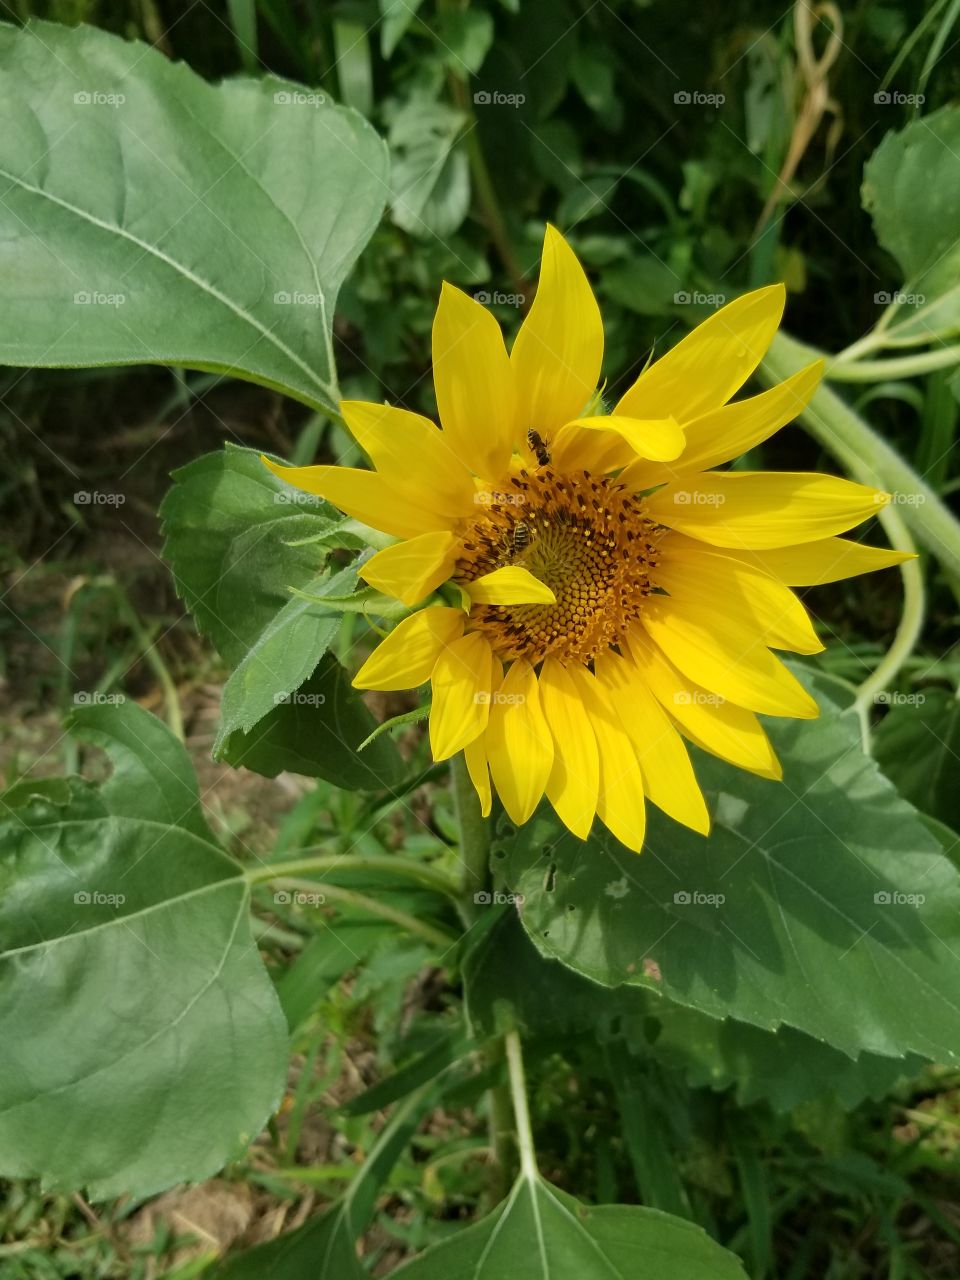 sunflower queen.